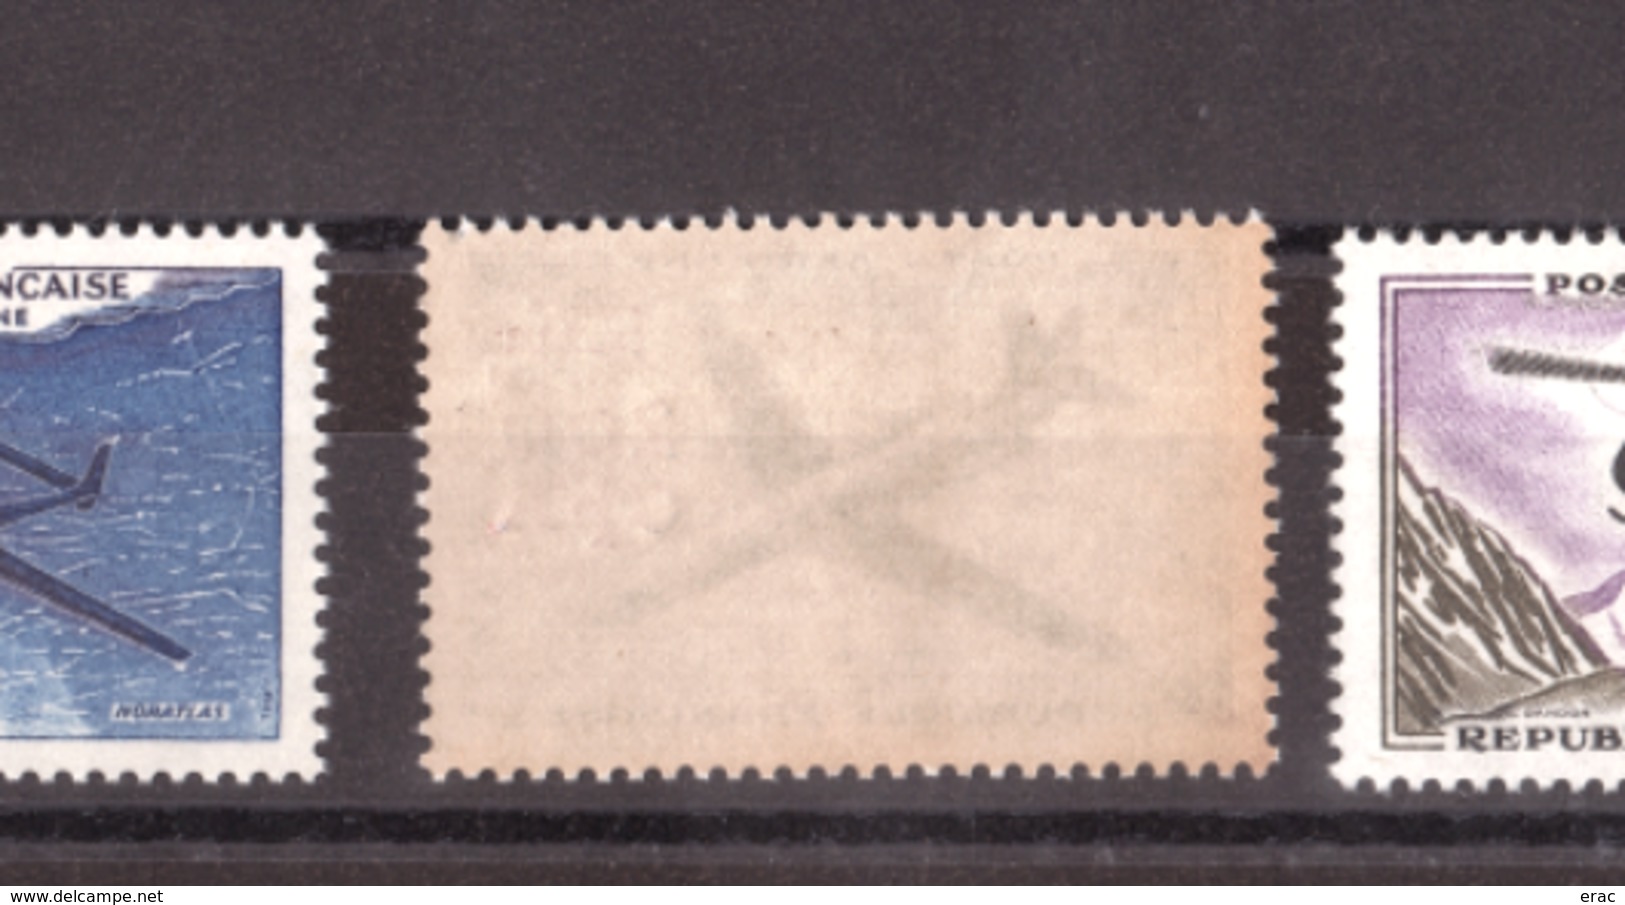 Réunion - 1961 - PA 58 à 60 - Neufs ** - Prototypes - Poste Aérienne